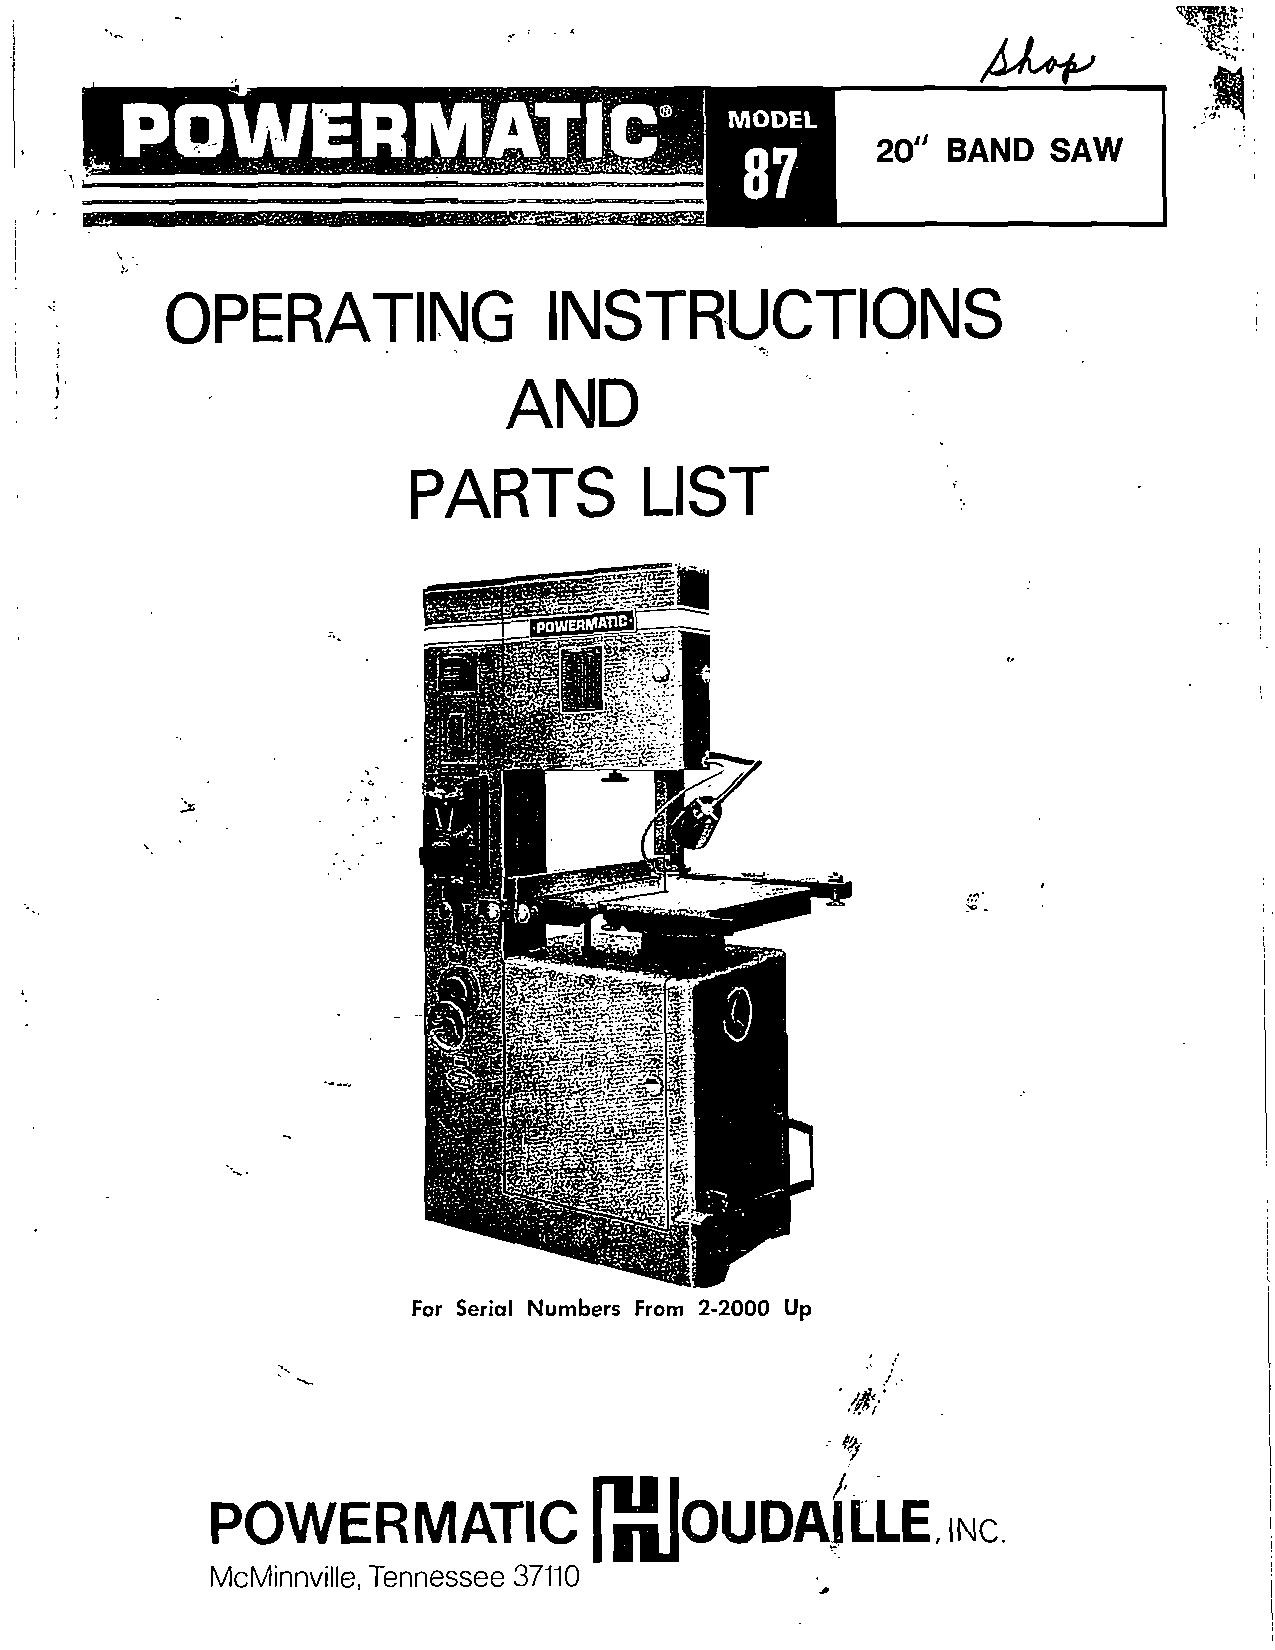 Powermatic 87 bandsaw manual.pdf